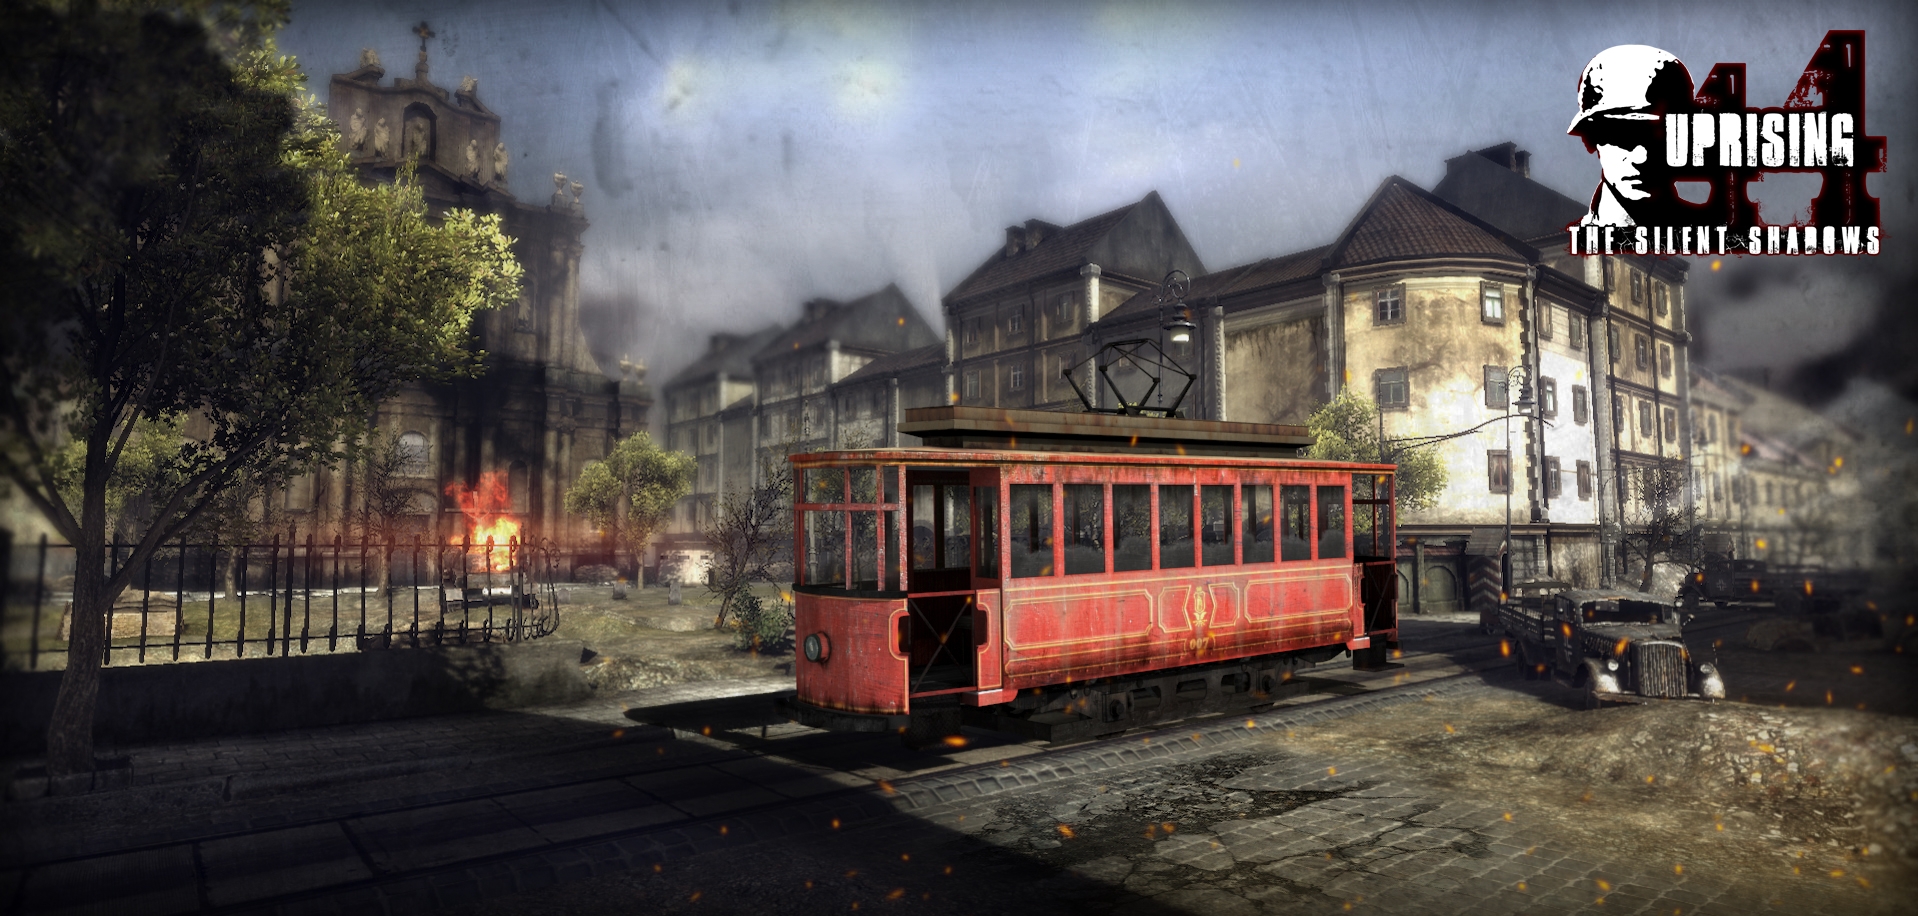 Скриншот из игры Uprising44: The Silent Shadows под номером 5